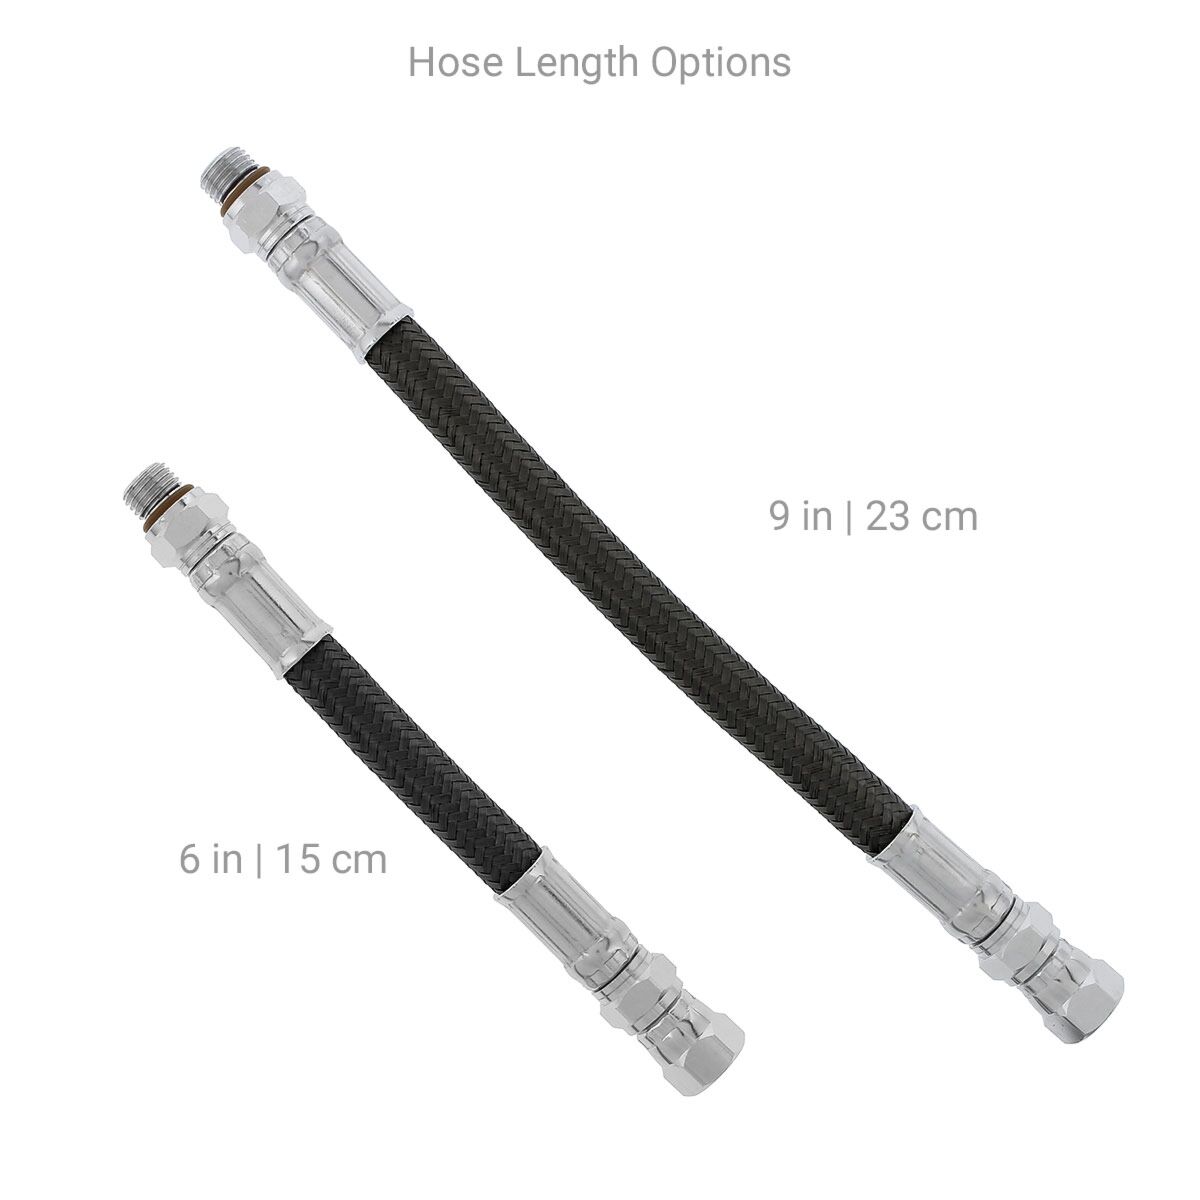 High pressure grease hose reel